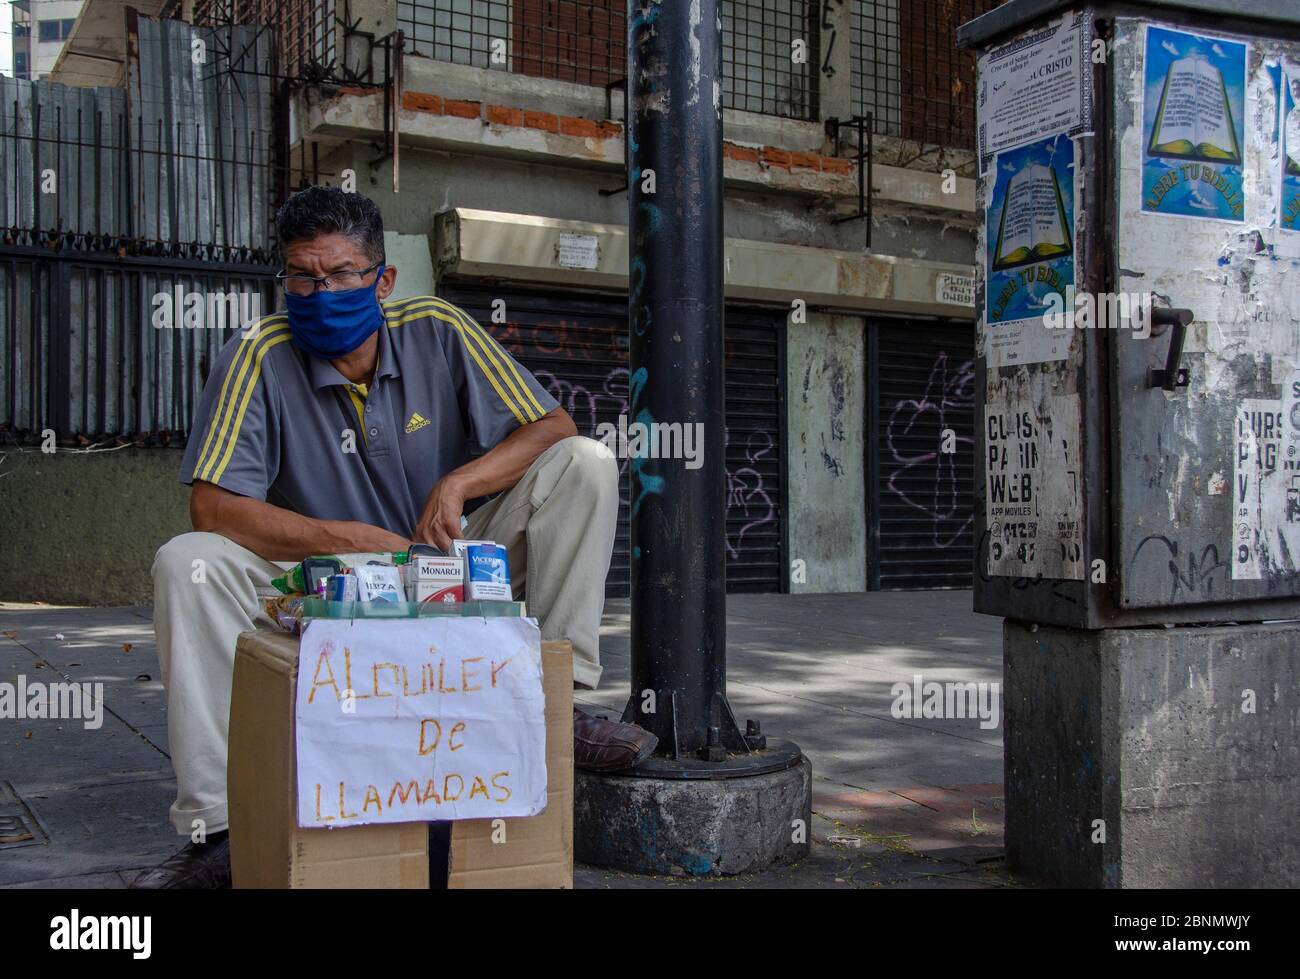 Un vendeur de rue vend des cigarettes et offre sur son affiche Location de téléphone portable pour le revenu dans la crise de quarantaine Banque D'Images